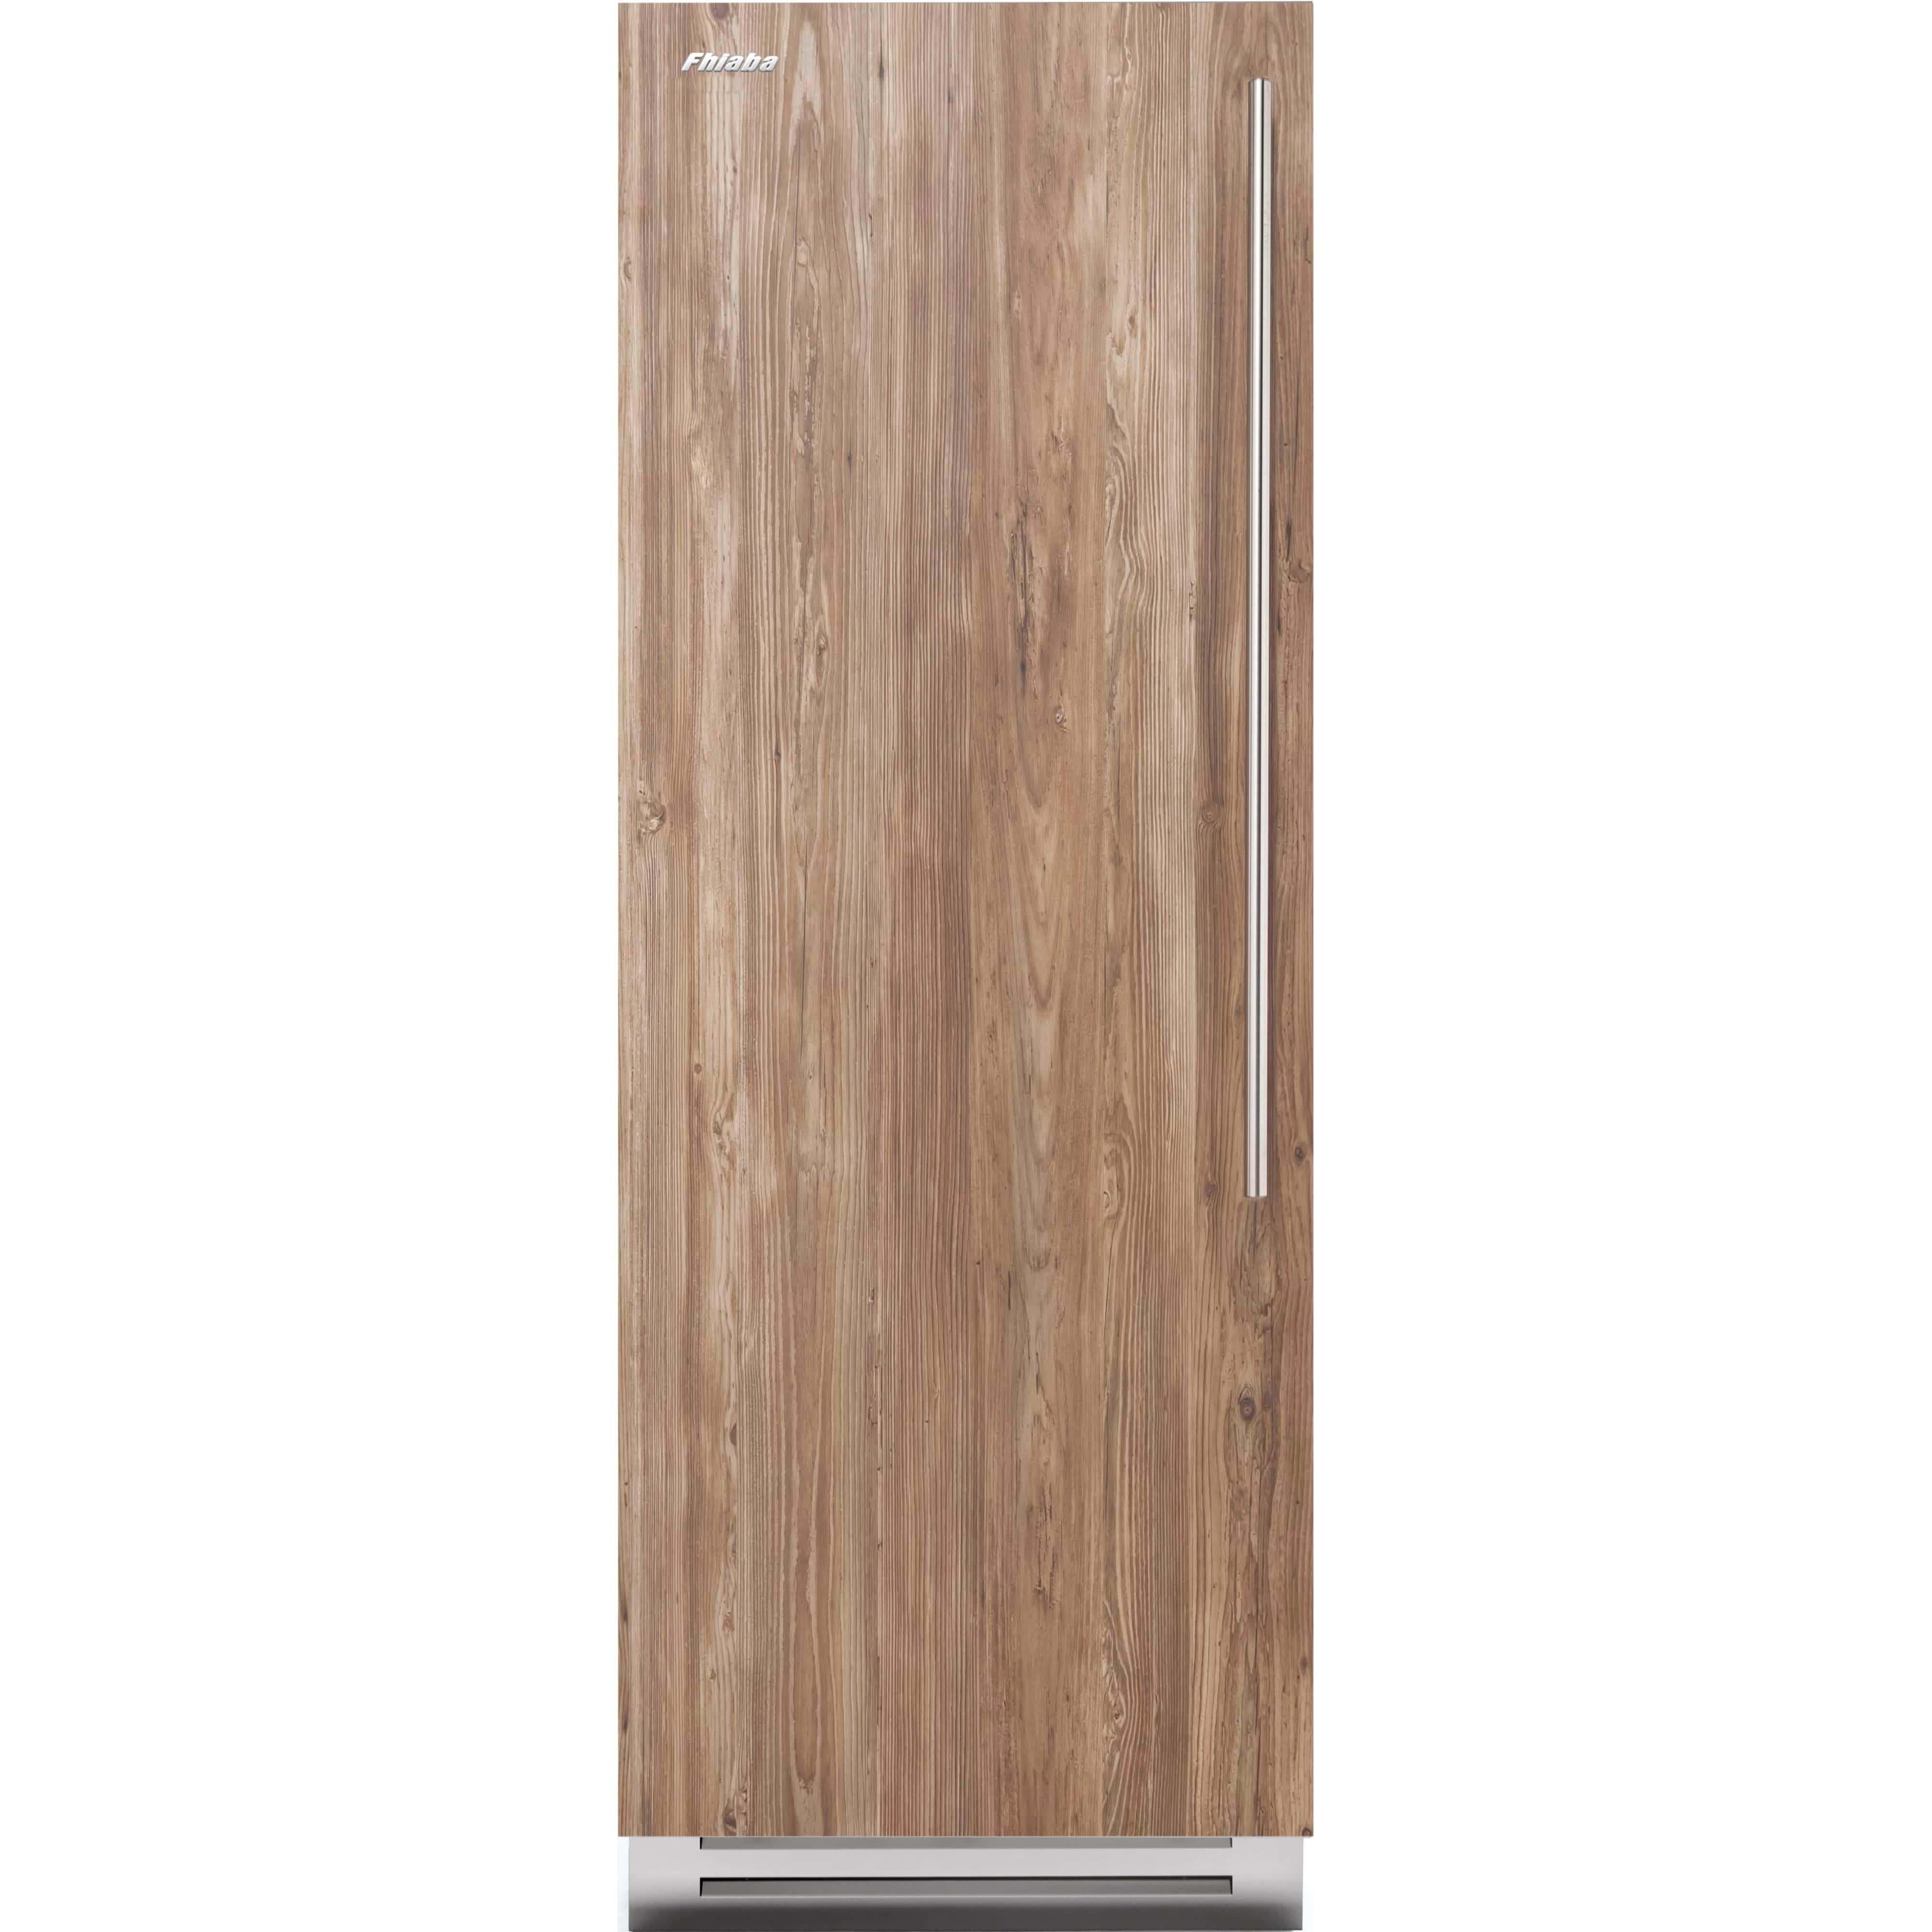 Fhiaba 16.87 cu. ft. Upright Freezer with Smart Touch TFT Display FI30FZC-LO2 Freezers FI30FZCLO2 Luxury Appliances Direct